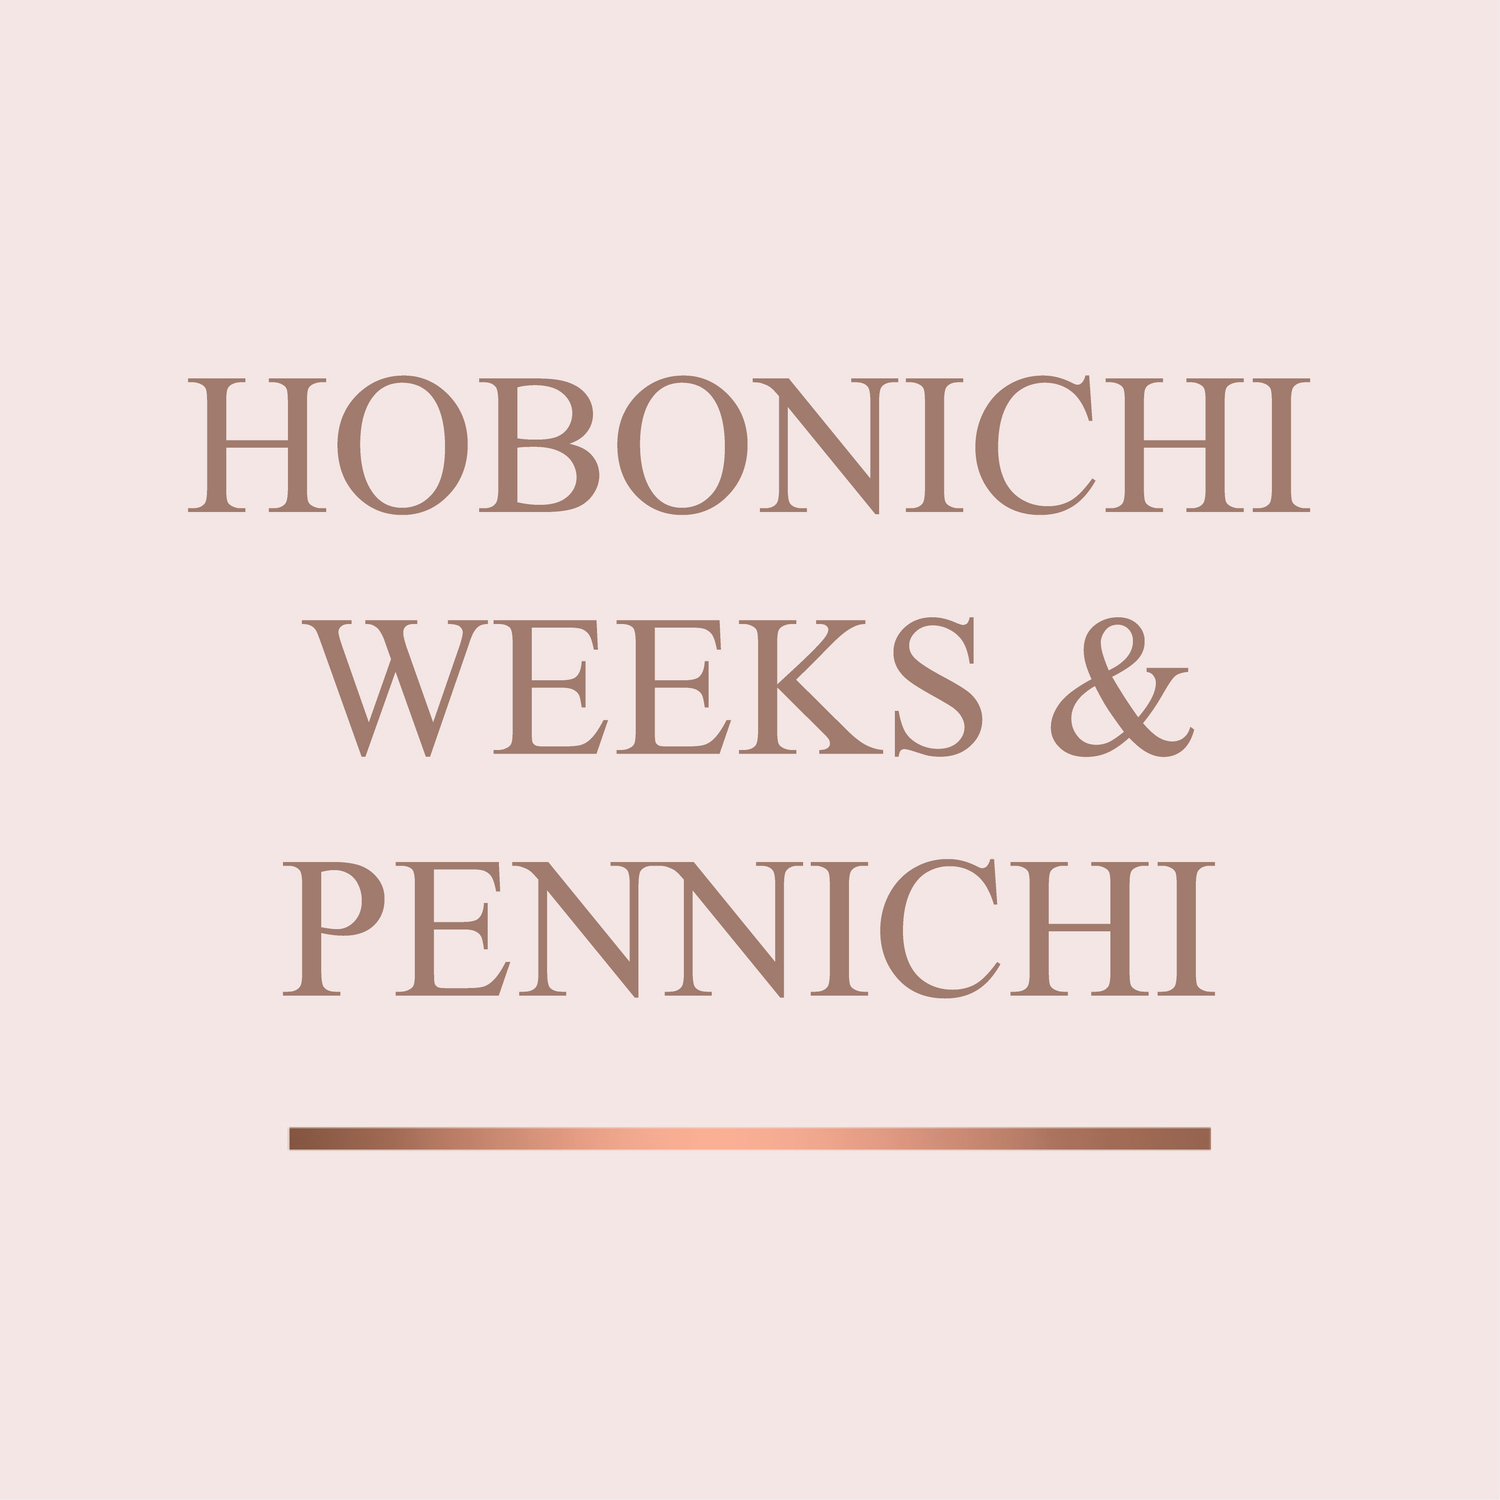 Hobonichi & Pennichi